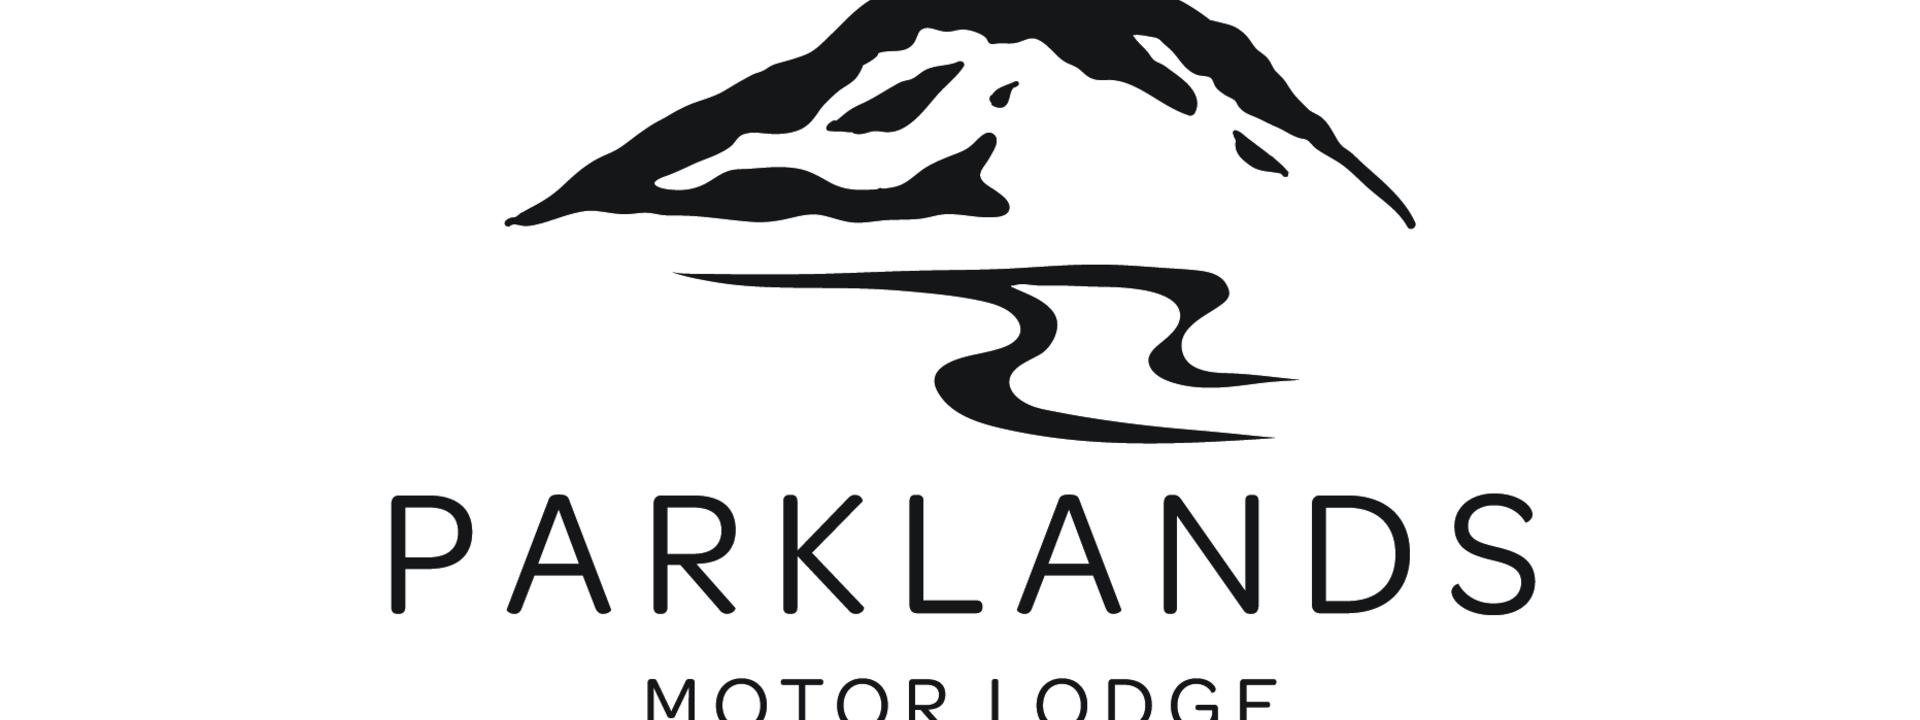 parklands-logo_black.jpg